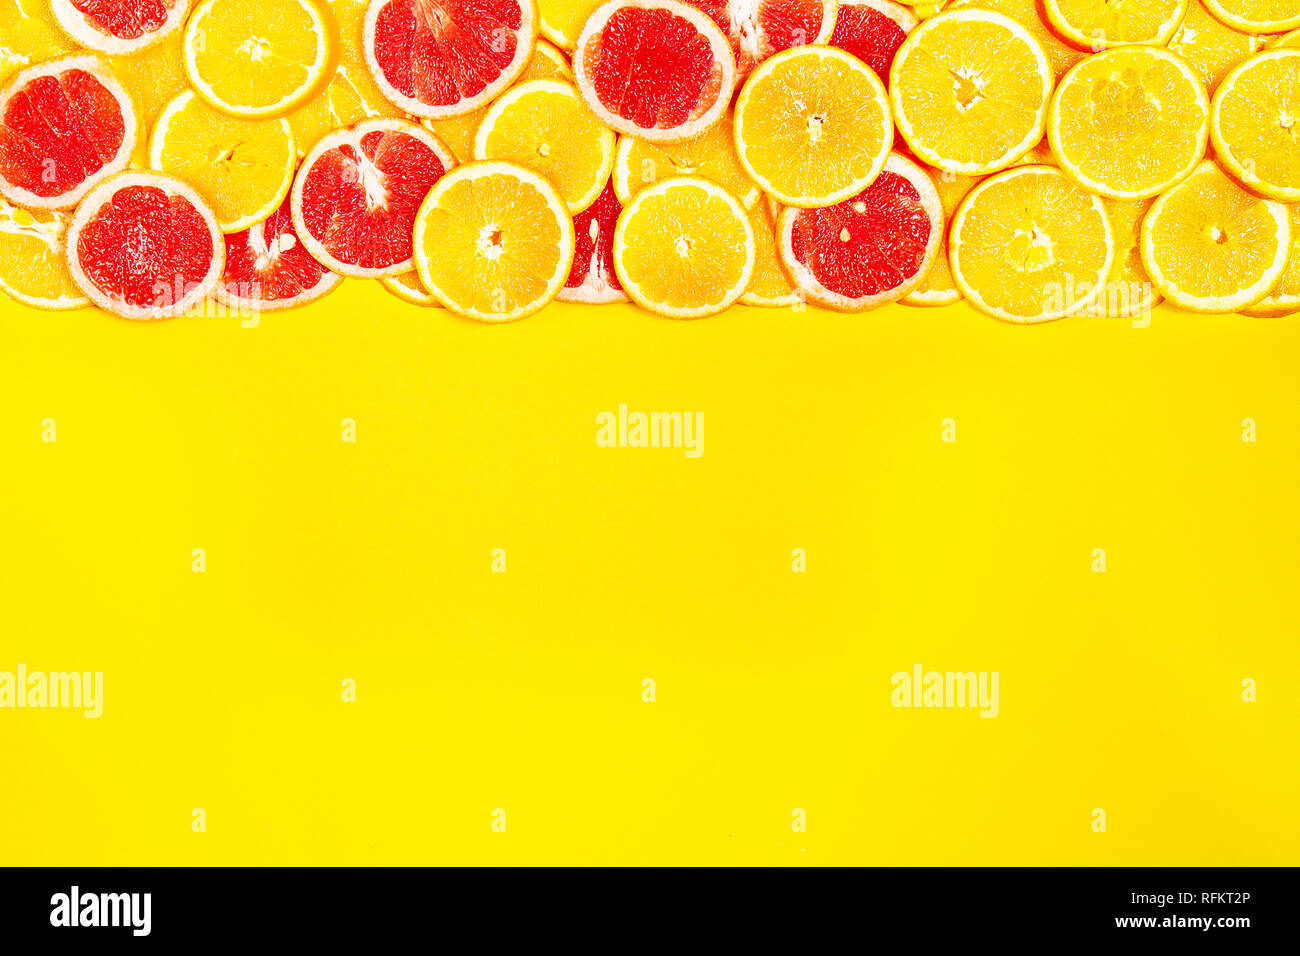 Lecker fruchtig-bunten hellen Hintergrund mit Orangen und Grapefruits. Ansicht von oben. Gesundes Leben oder detox Konzept. Gesundes Essen. Stockfoto